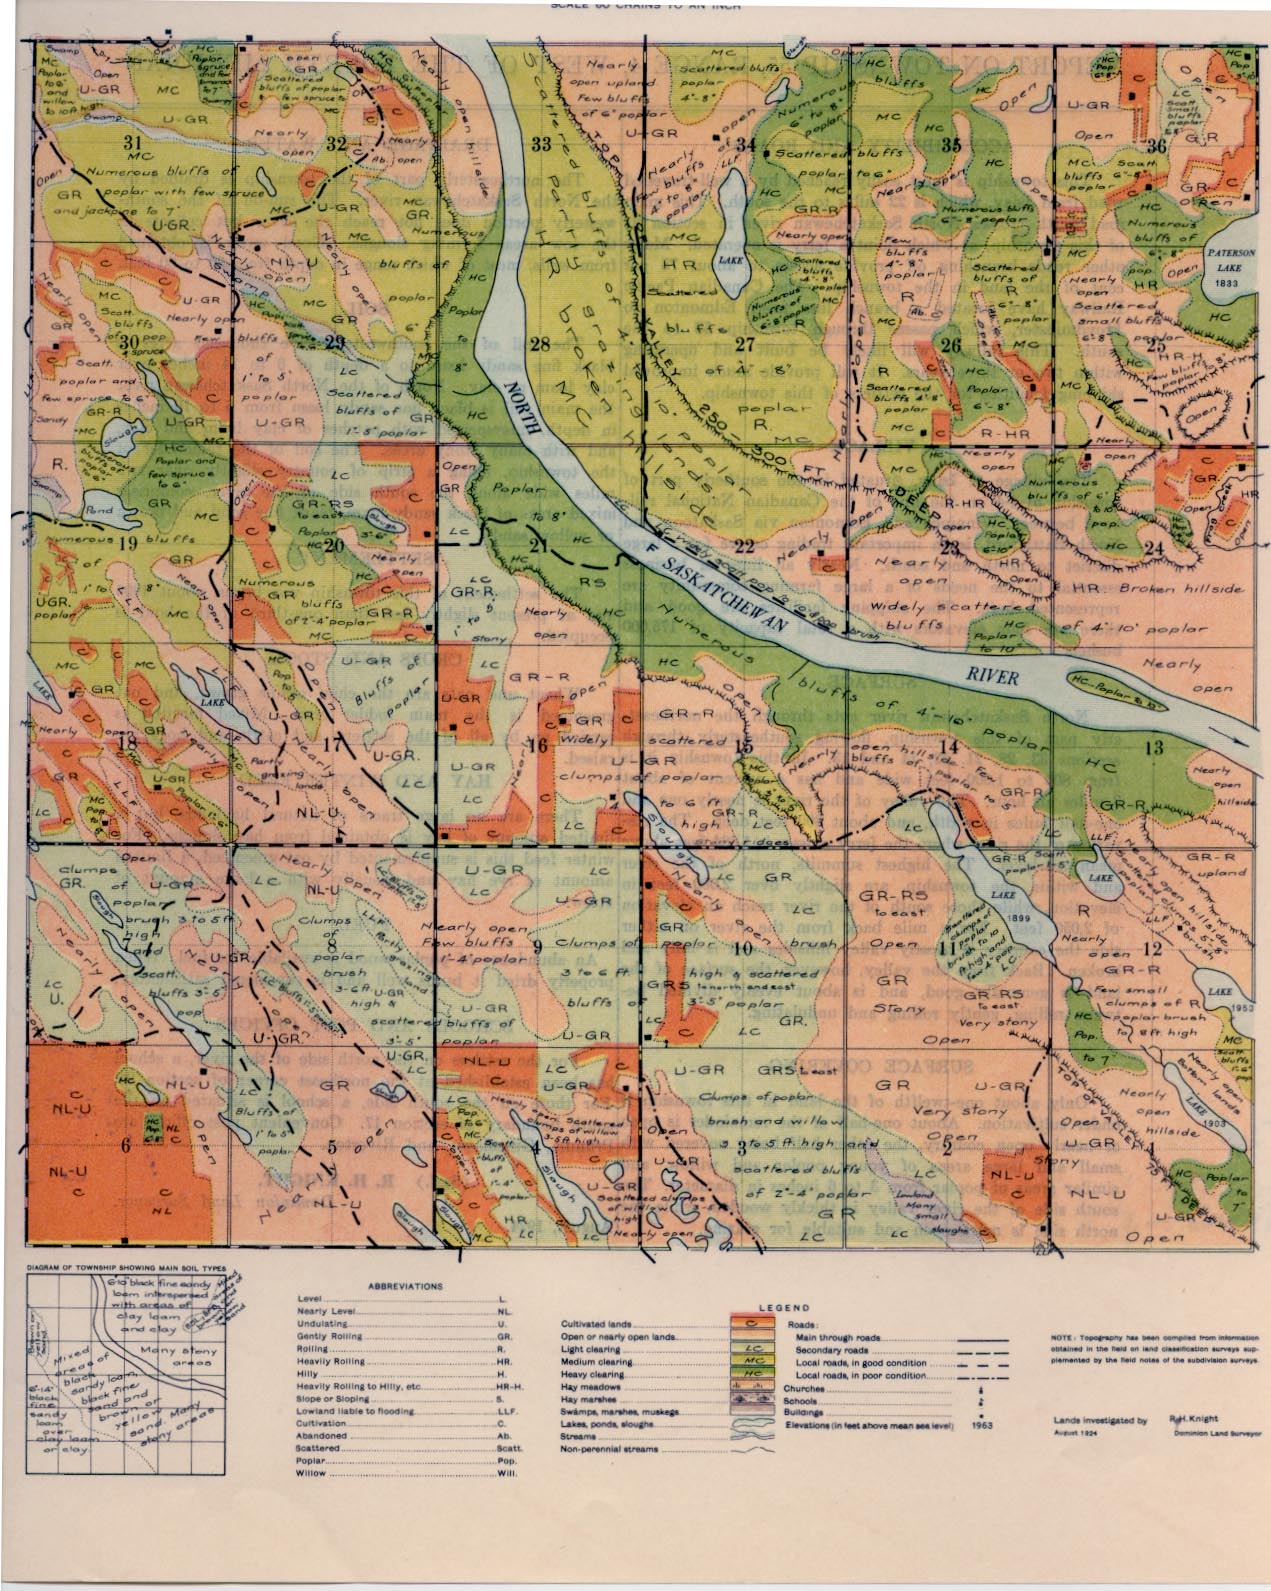 Township 55 Range 4 w 4th 1924